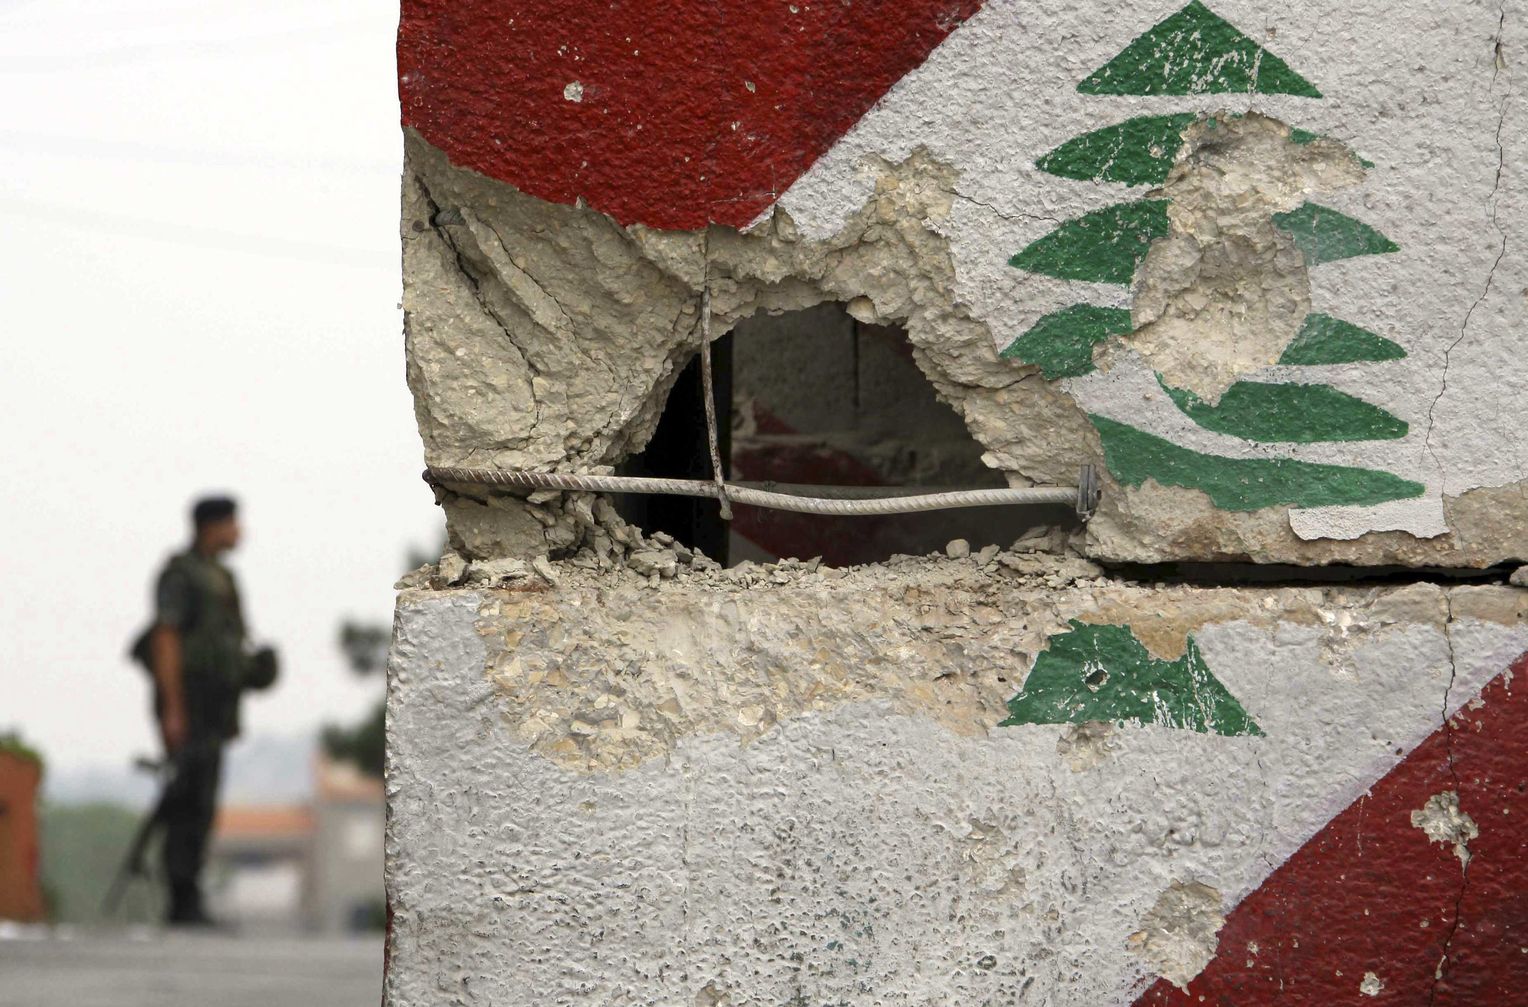 liban conflict armat (sursă foto: spiegel.de)